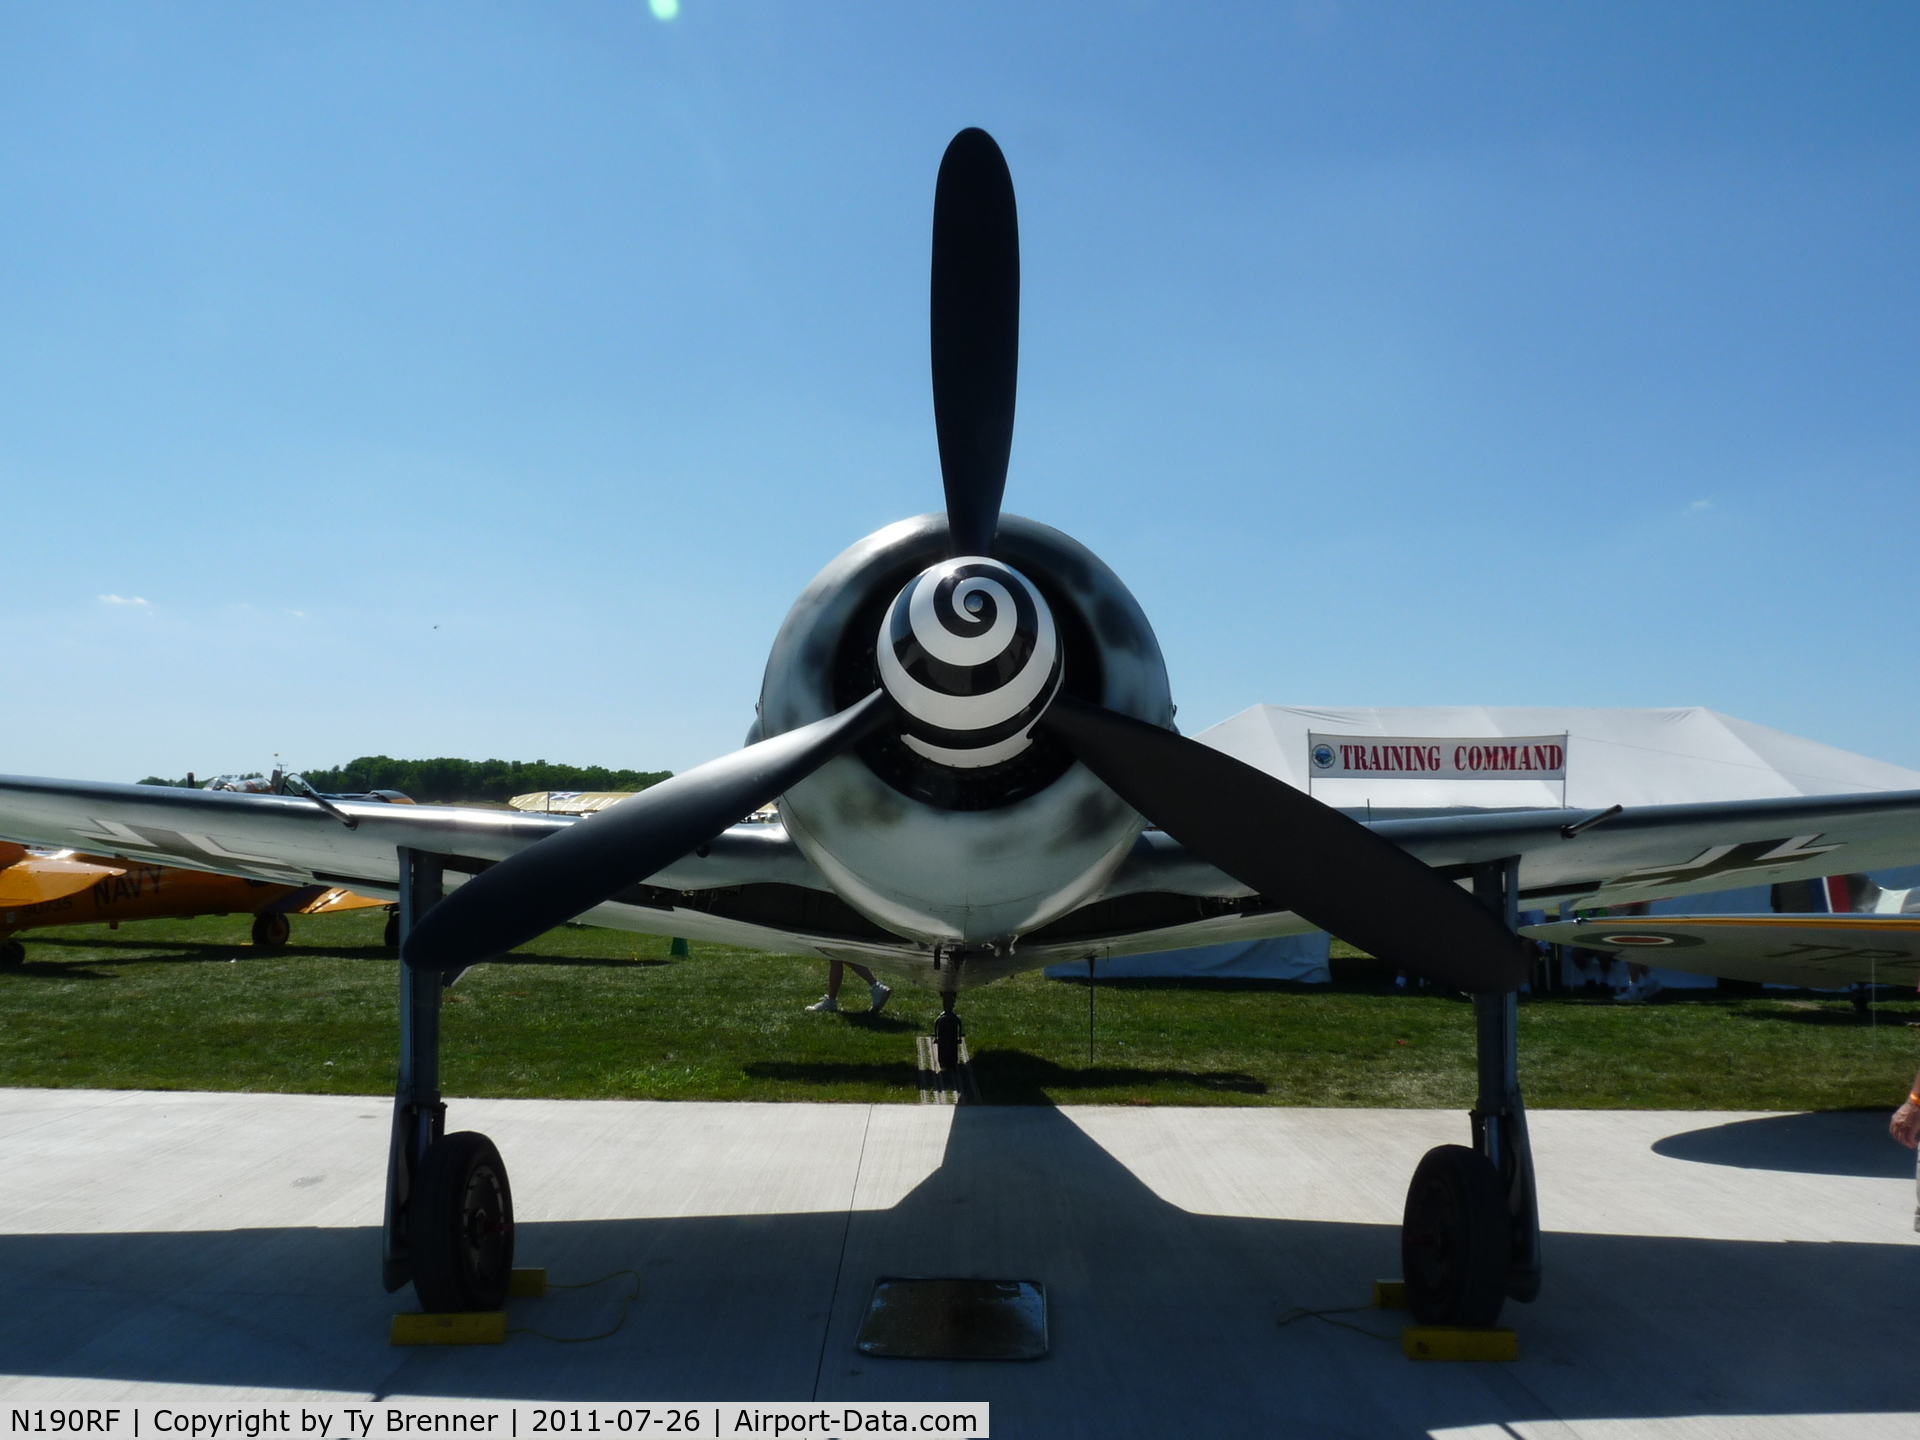 N190RF, Focke-Wulf Fw-190A-9 C/N 980 574, FW 190 A-9 